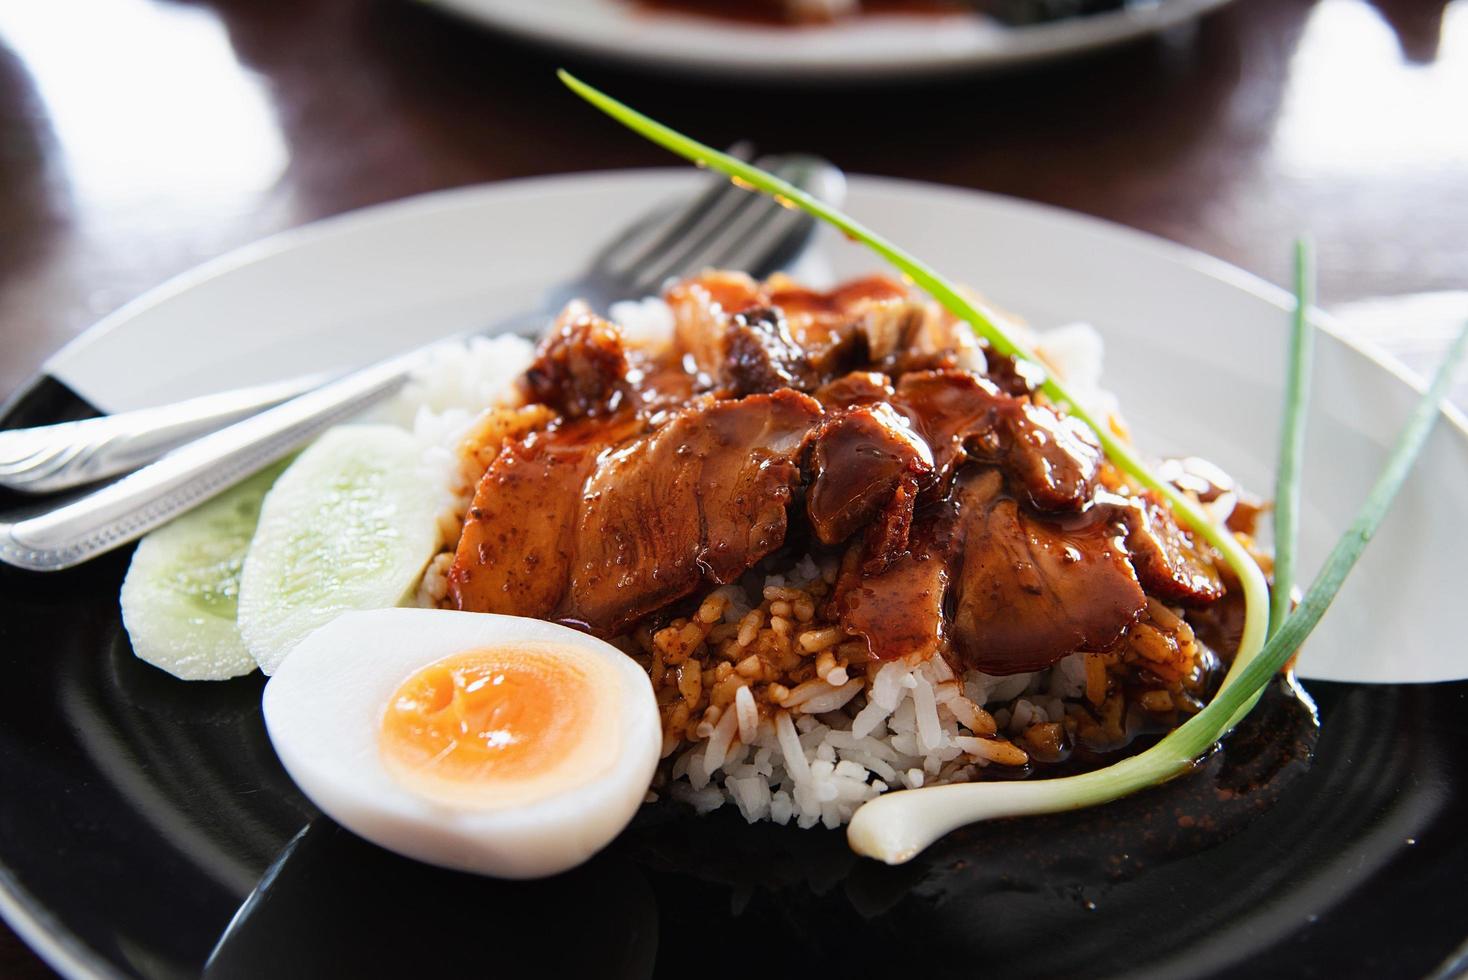 cerdo rojo y arroz - famosa receta de comida tailandesa foto